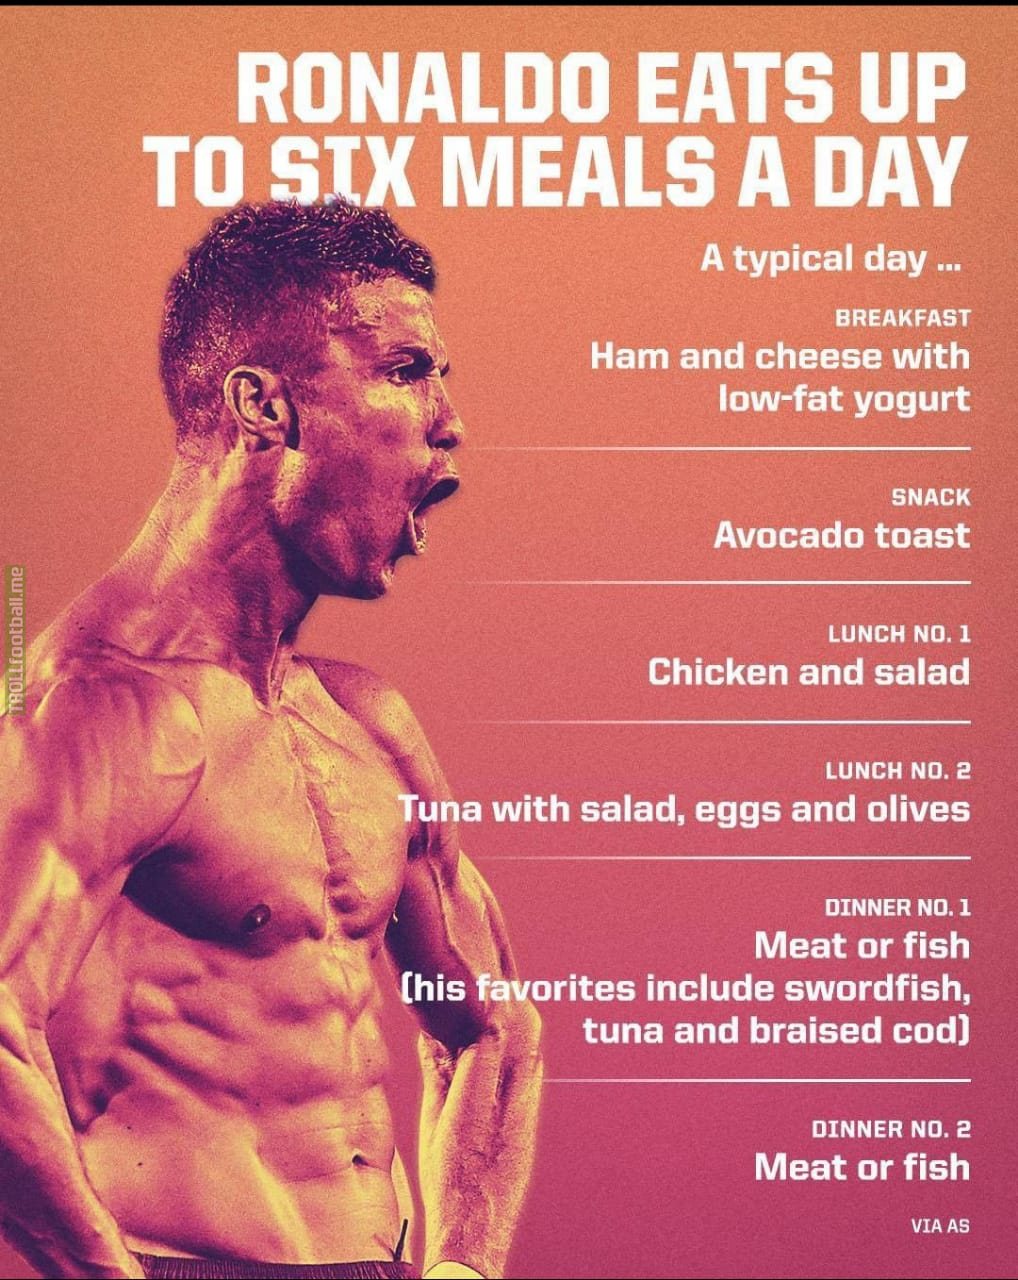 [Espn via AS] Cristiano Ronaldo's daily diet.